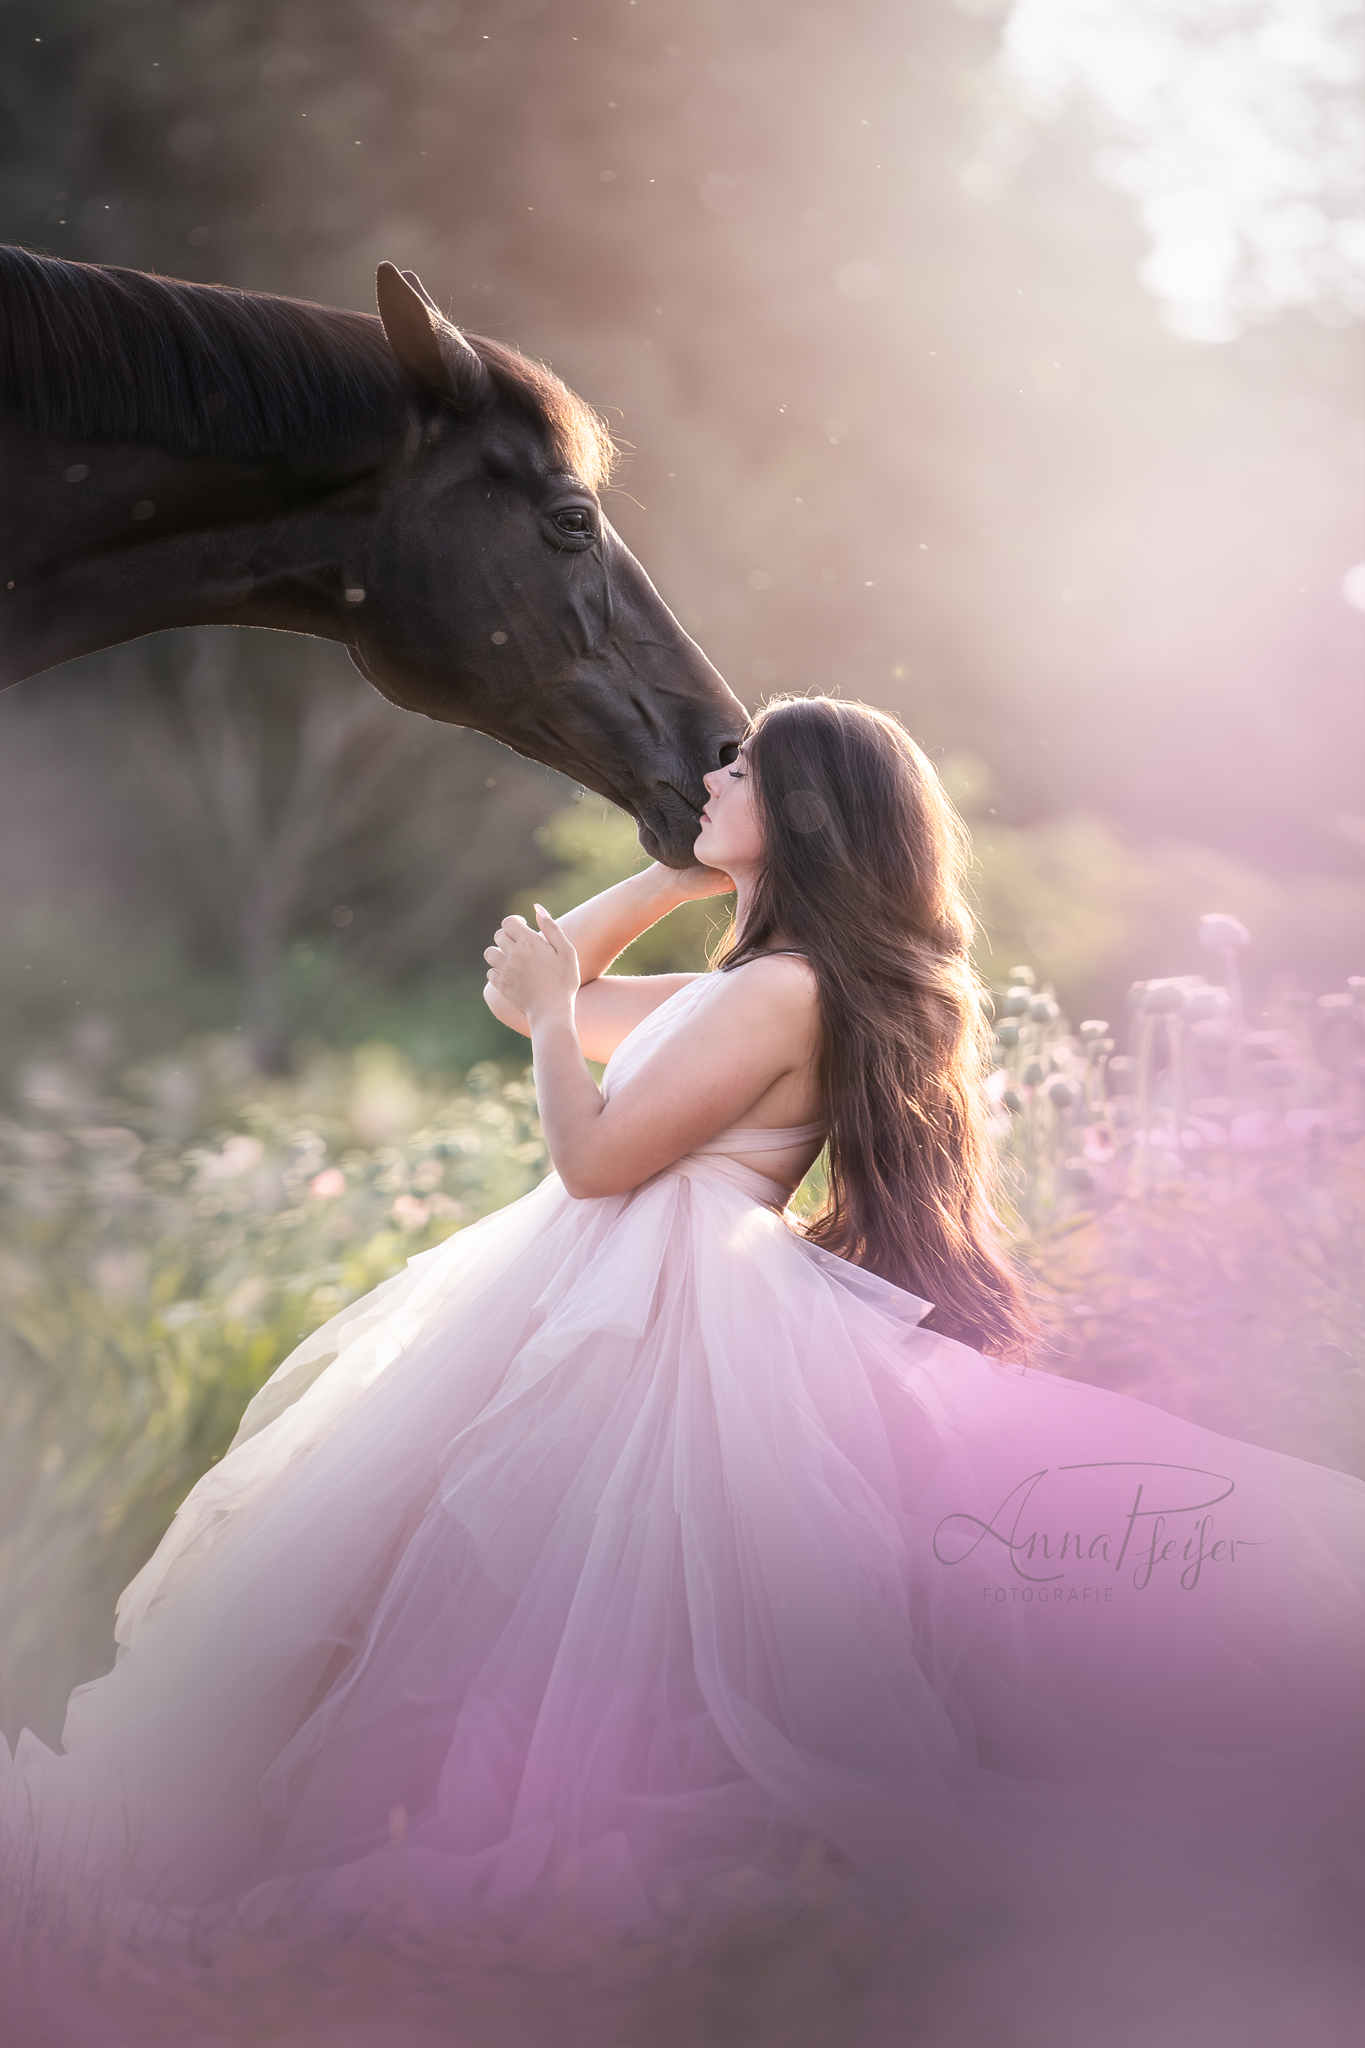 Pferd und Frau in märchenhafter Umgebung